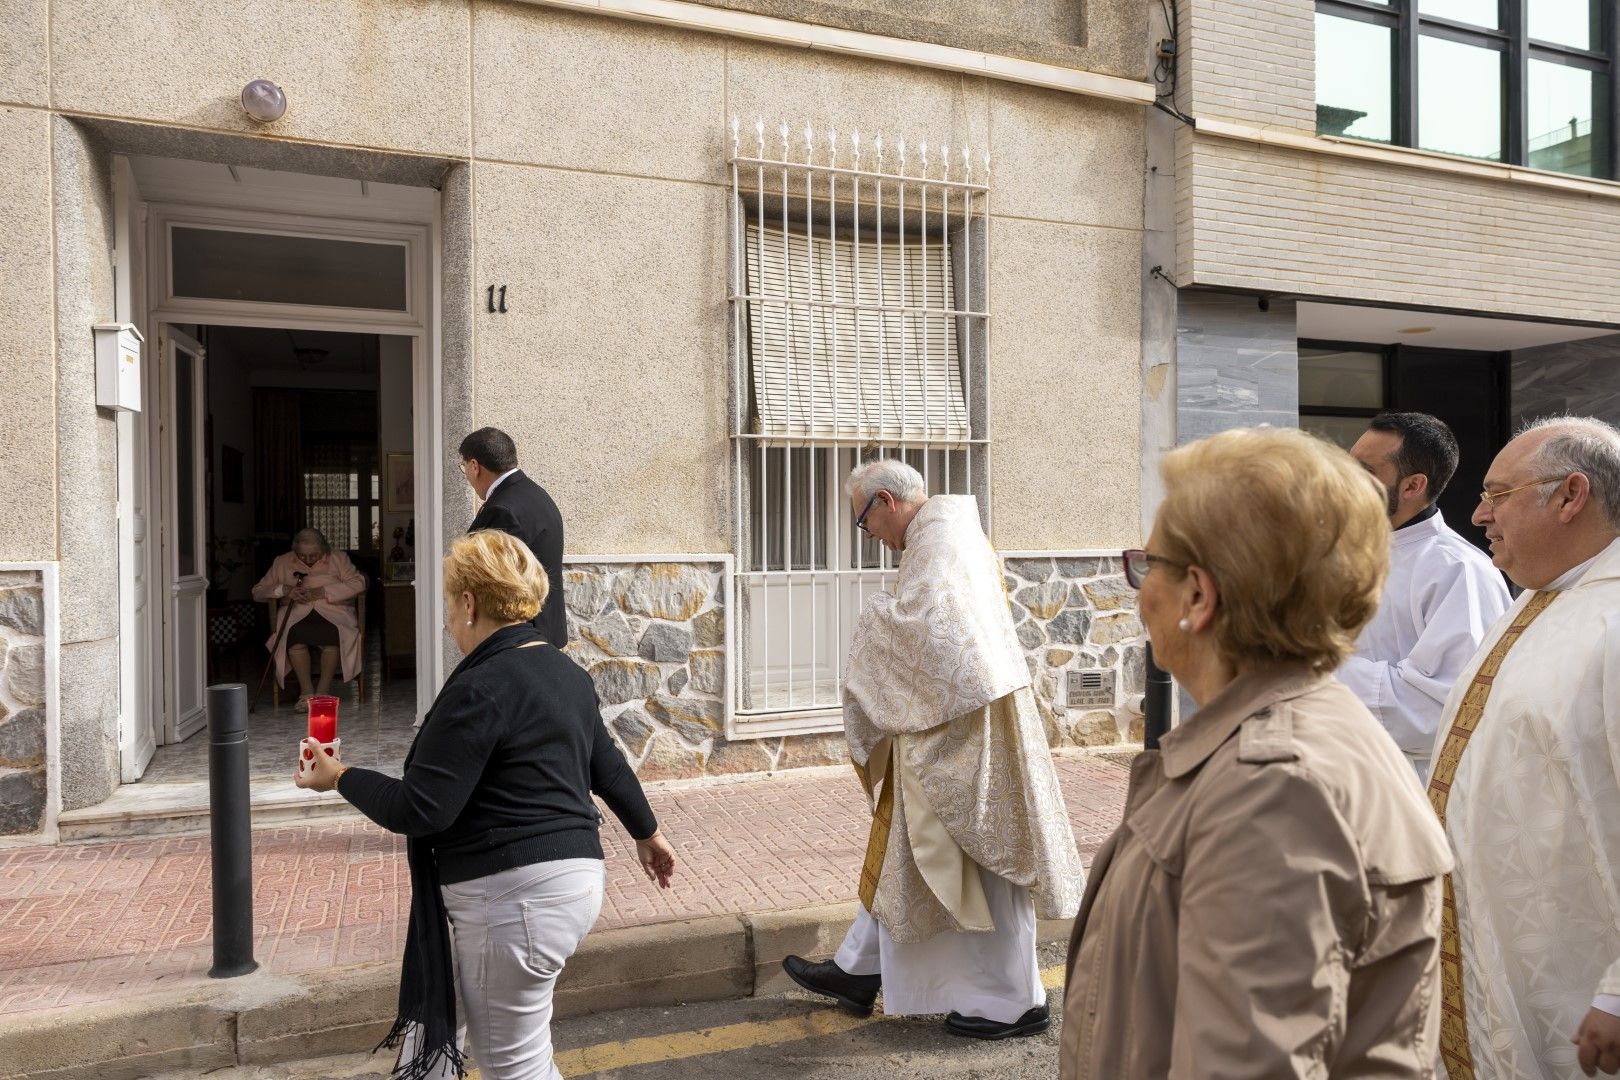 Procesión "del Comulgar" de San Vicente Ferrer en Torrevieja